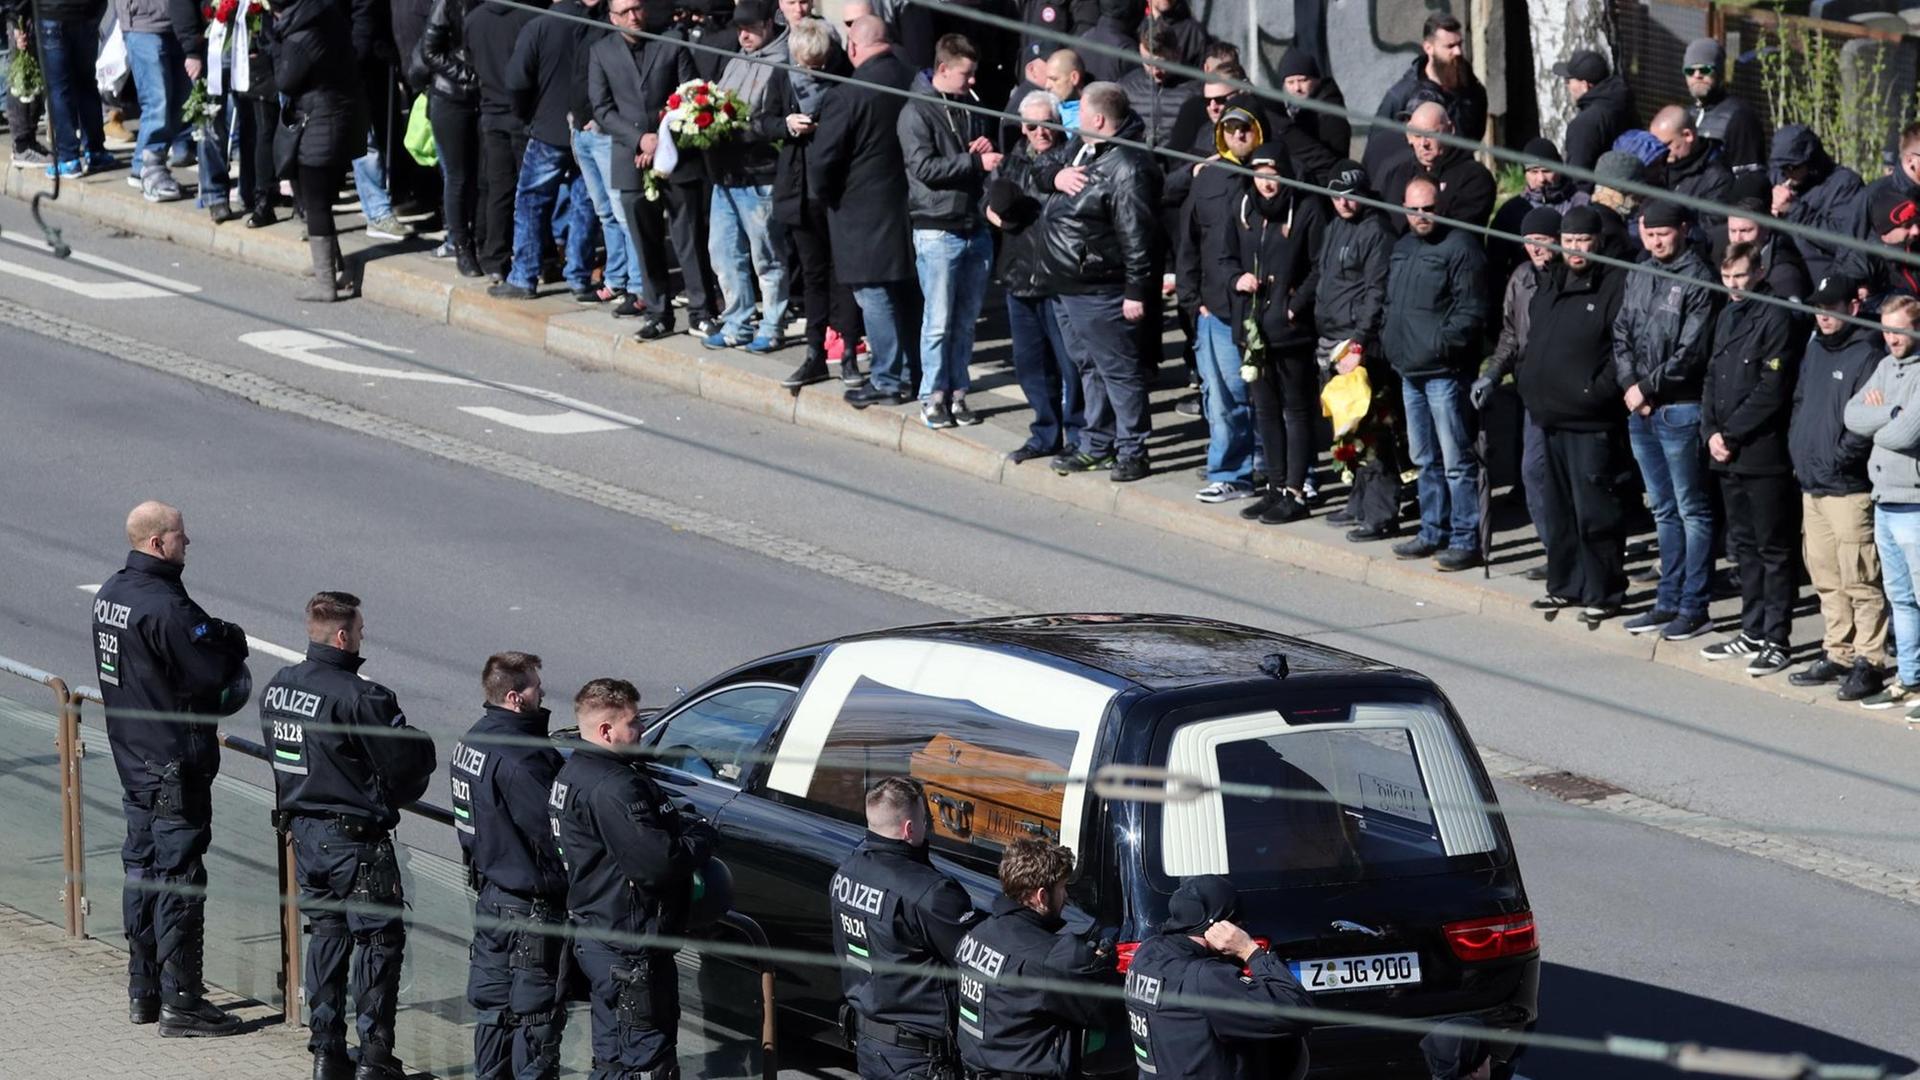 Teilnehmer eines Trauerzugs sehen zum Leichenwagen mit Sarg auf dem Weg zur Beerdigung des verstorbenen Rechtsextremisten in Chemnitz.